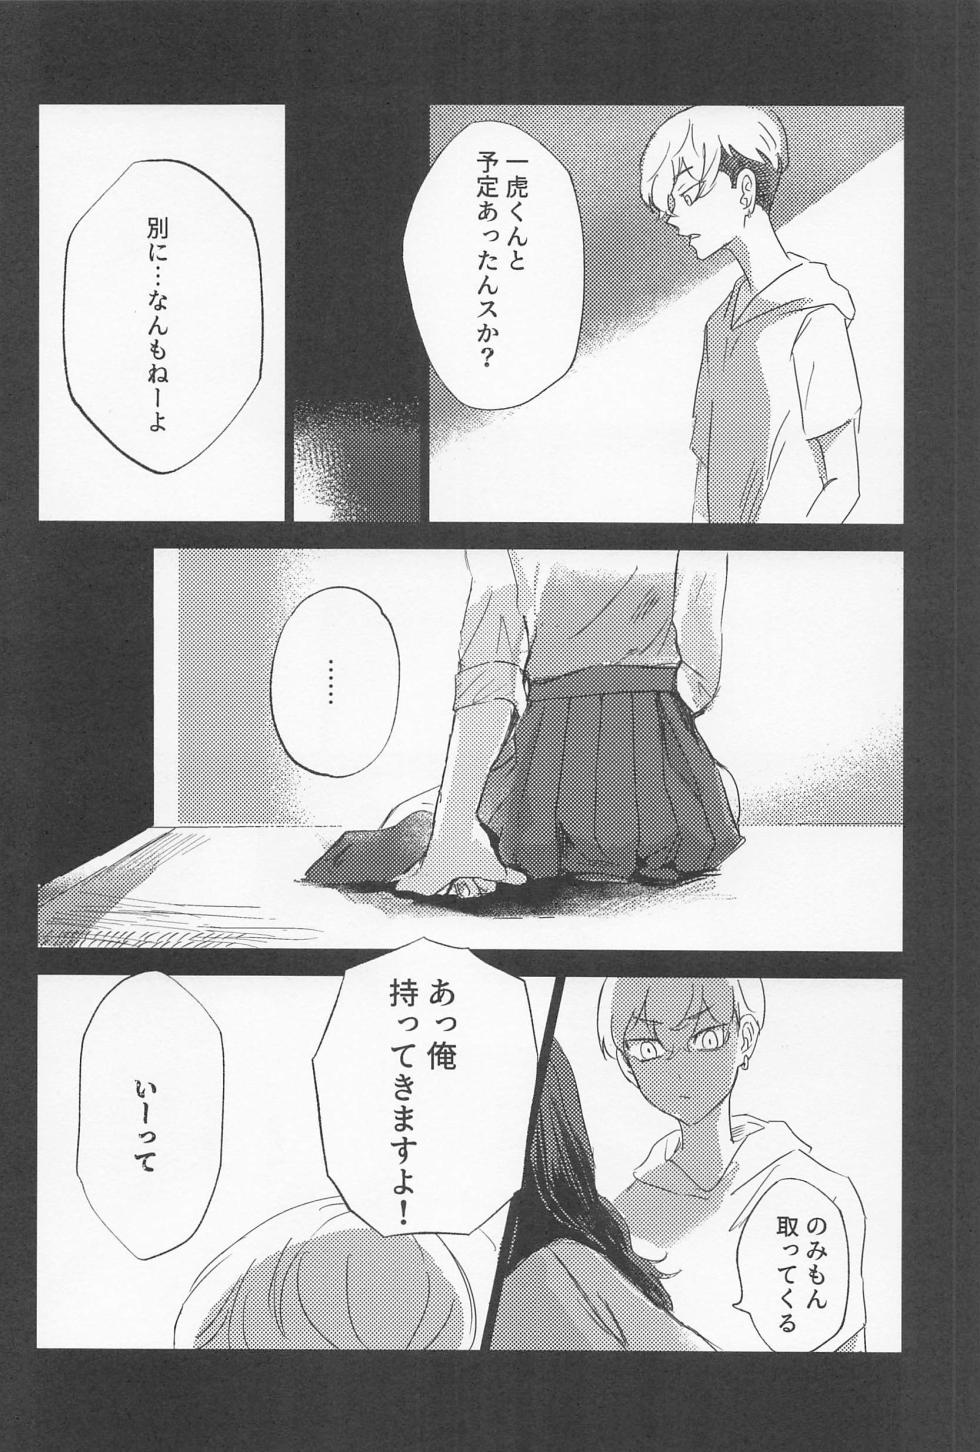 [aihanai] kazutorashusshoshitatteyo (tokyo卍ribenjazu) - Page 39